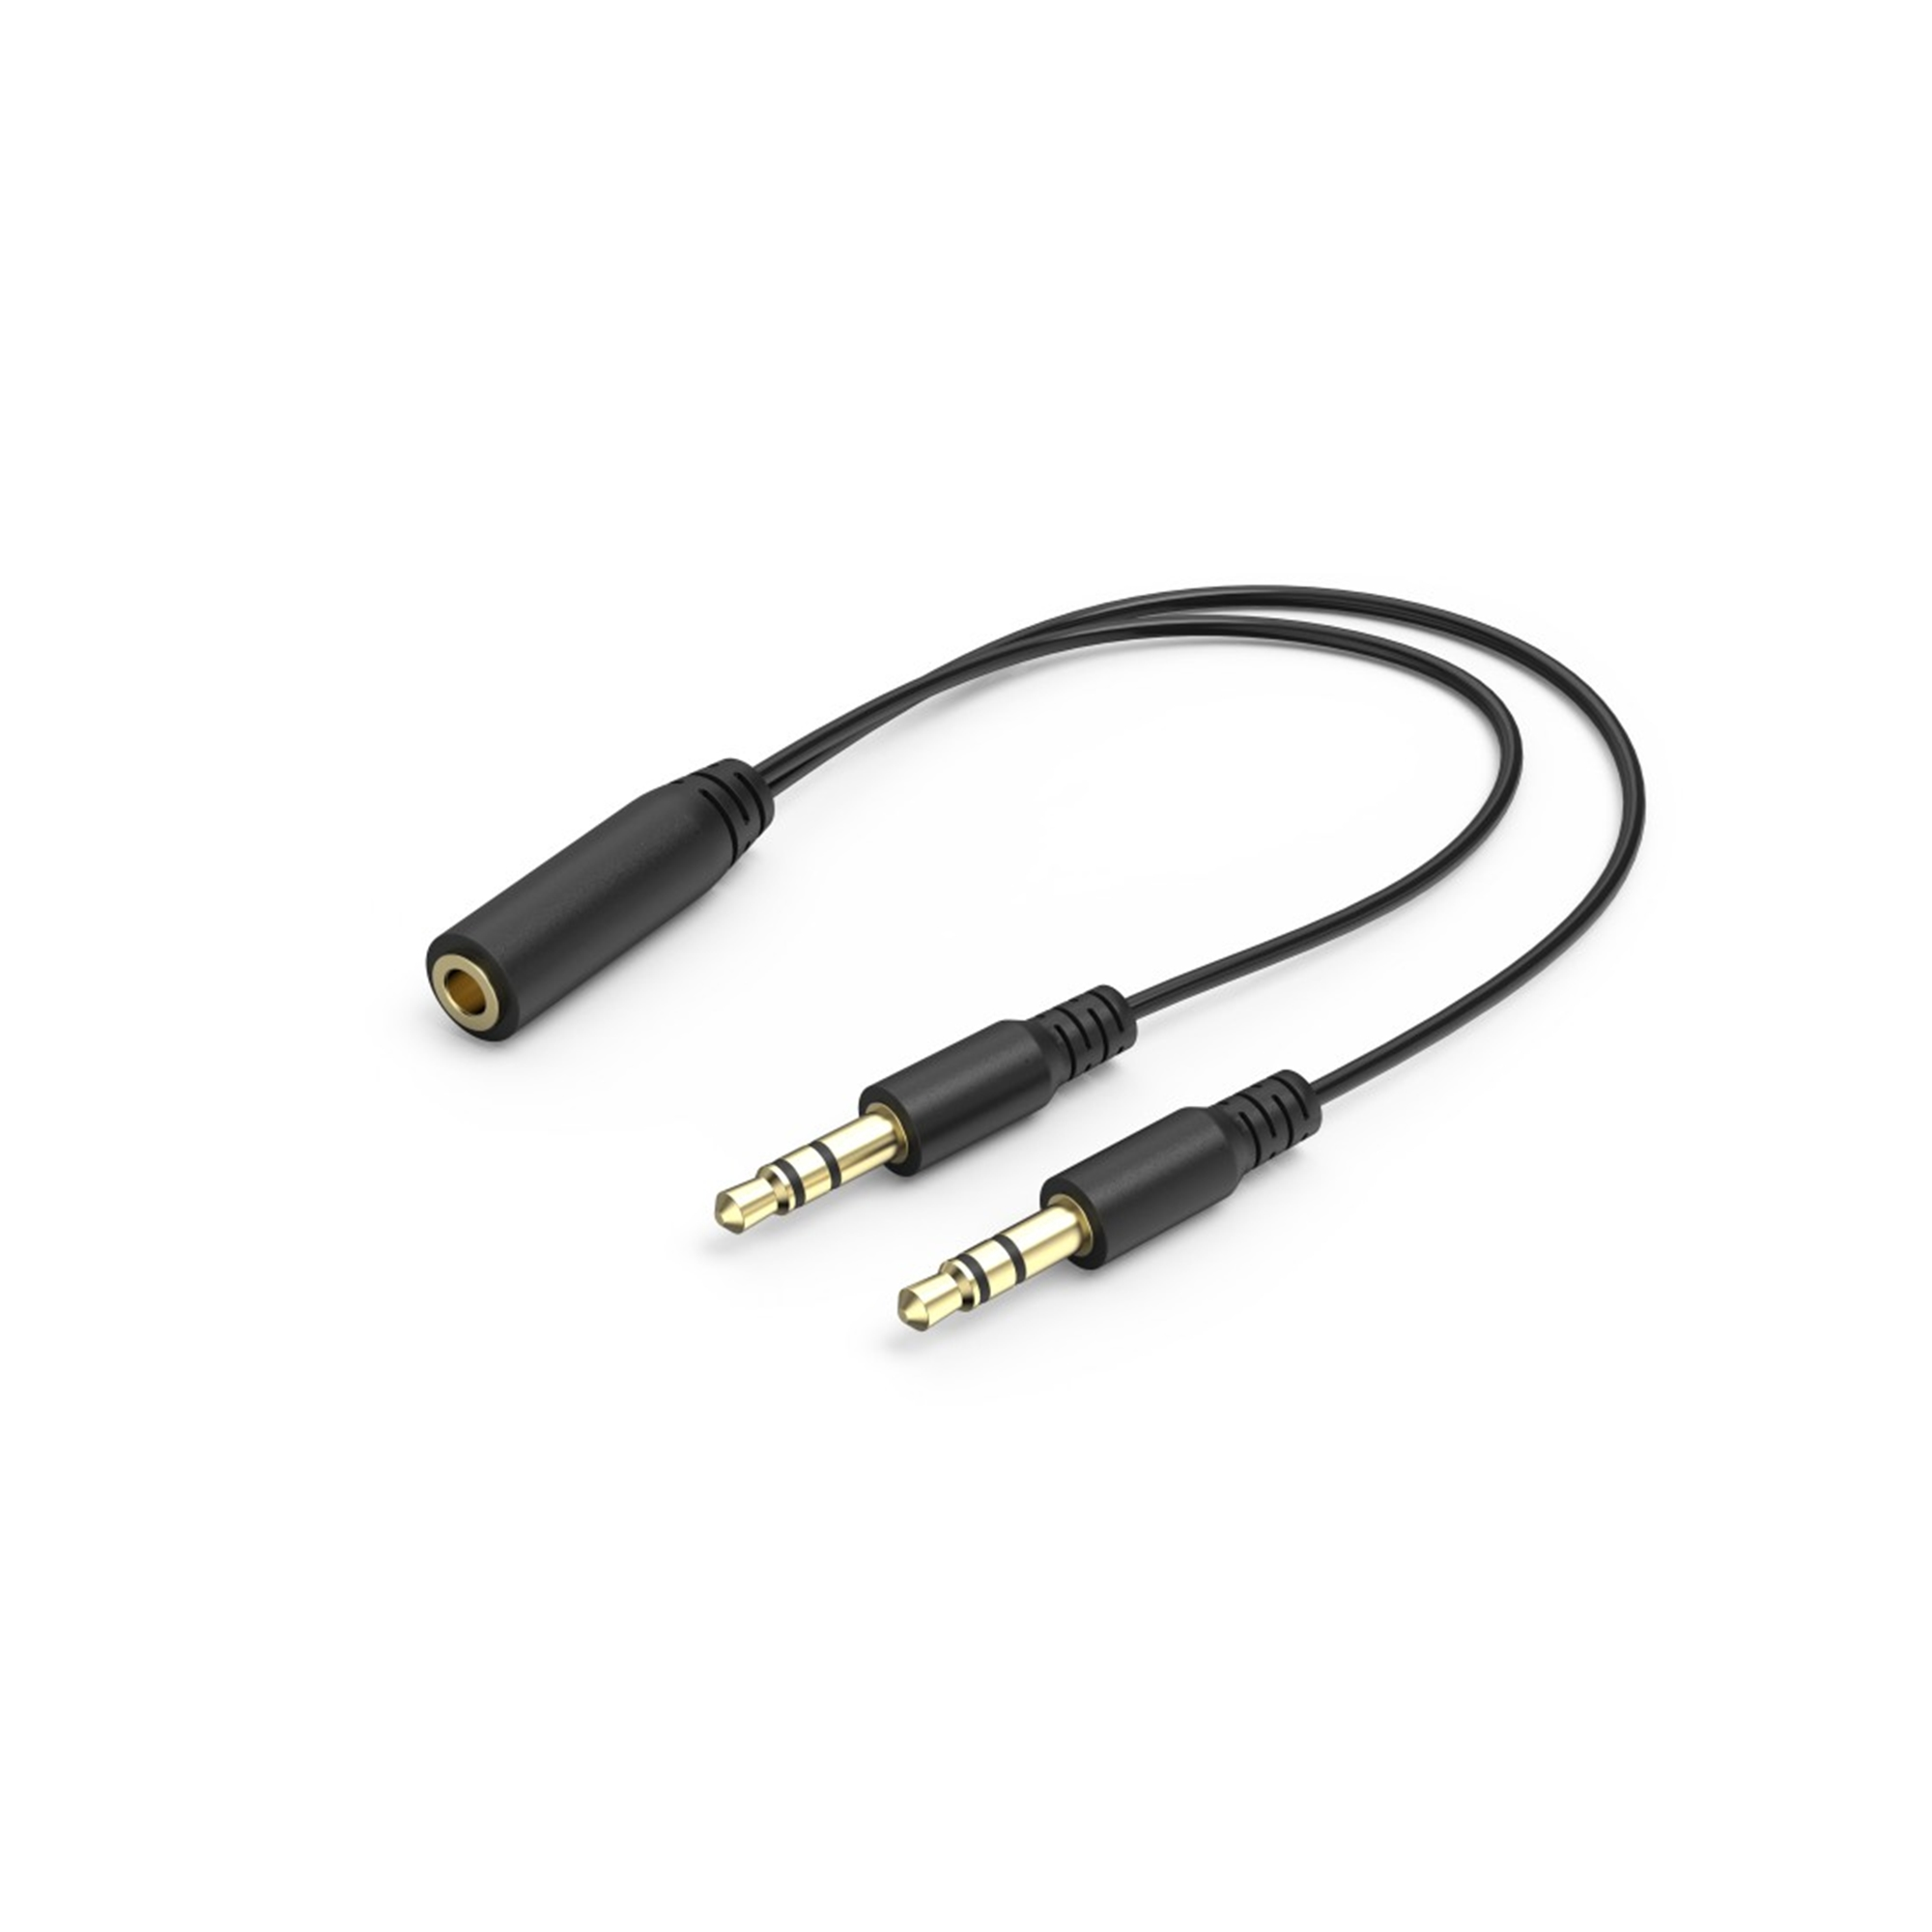 URAGE SoundZ Weiß 100 Over-ear V2, Gaming-Headset